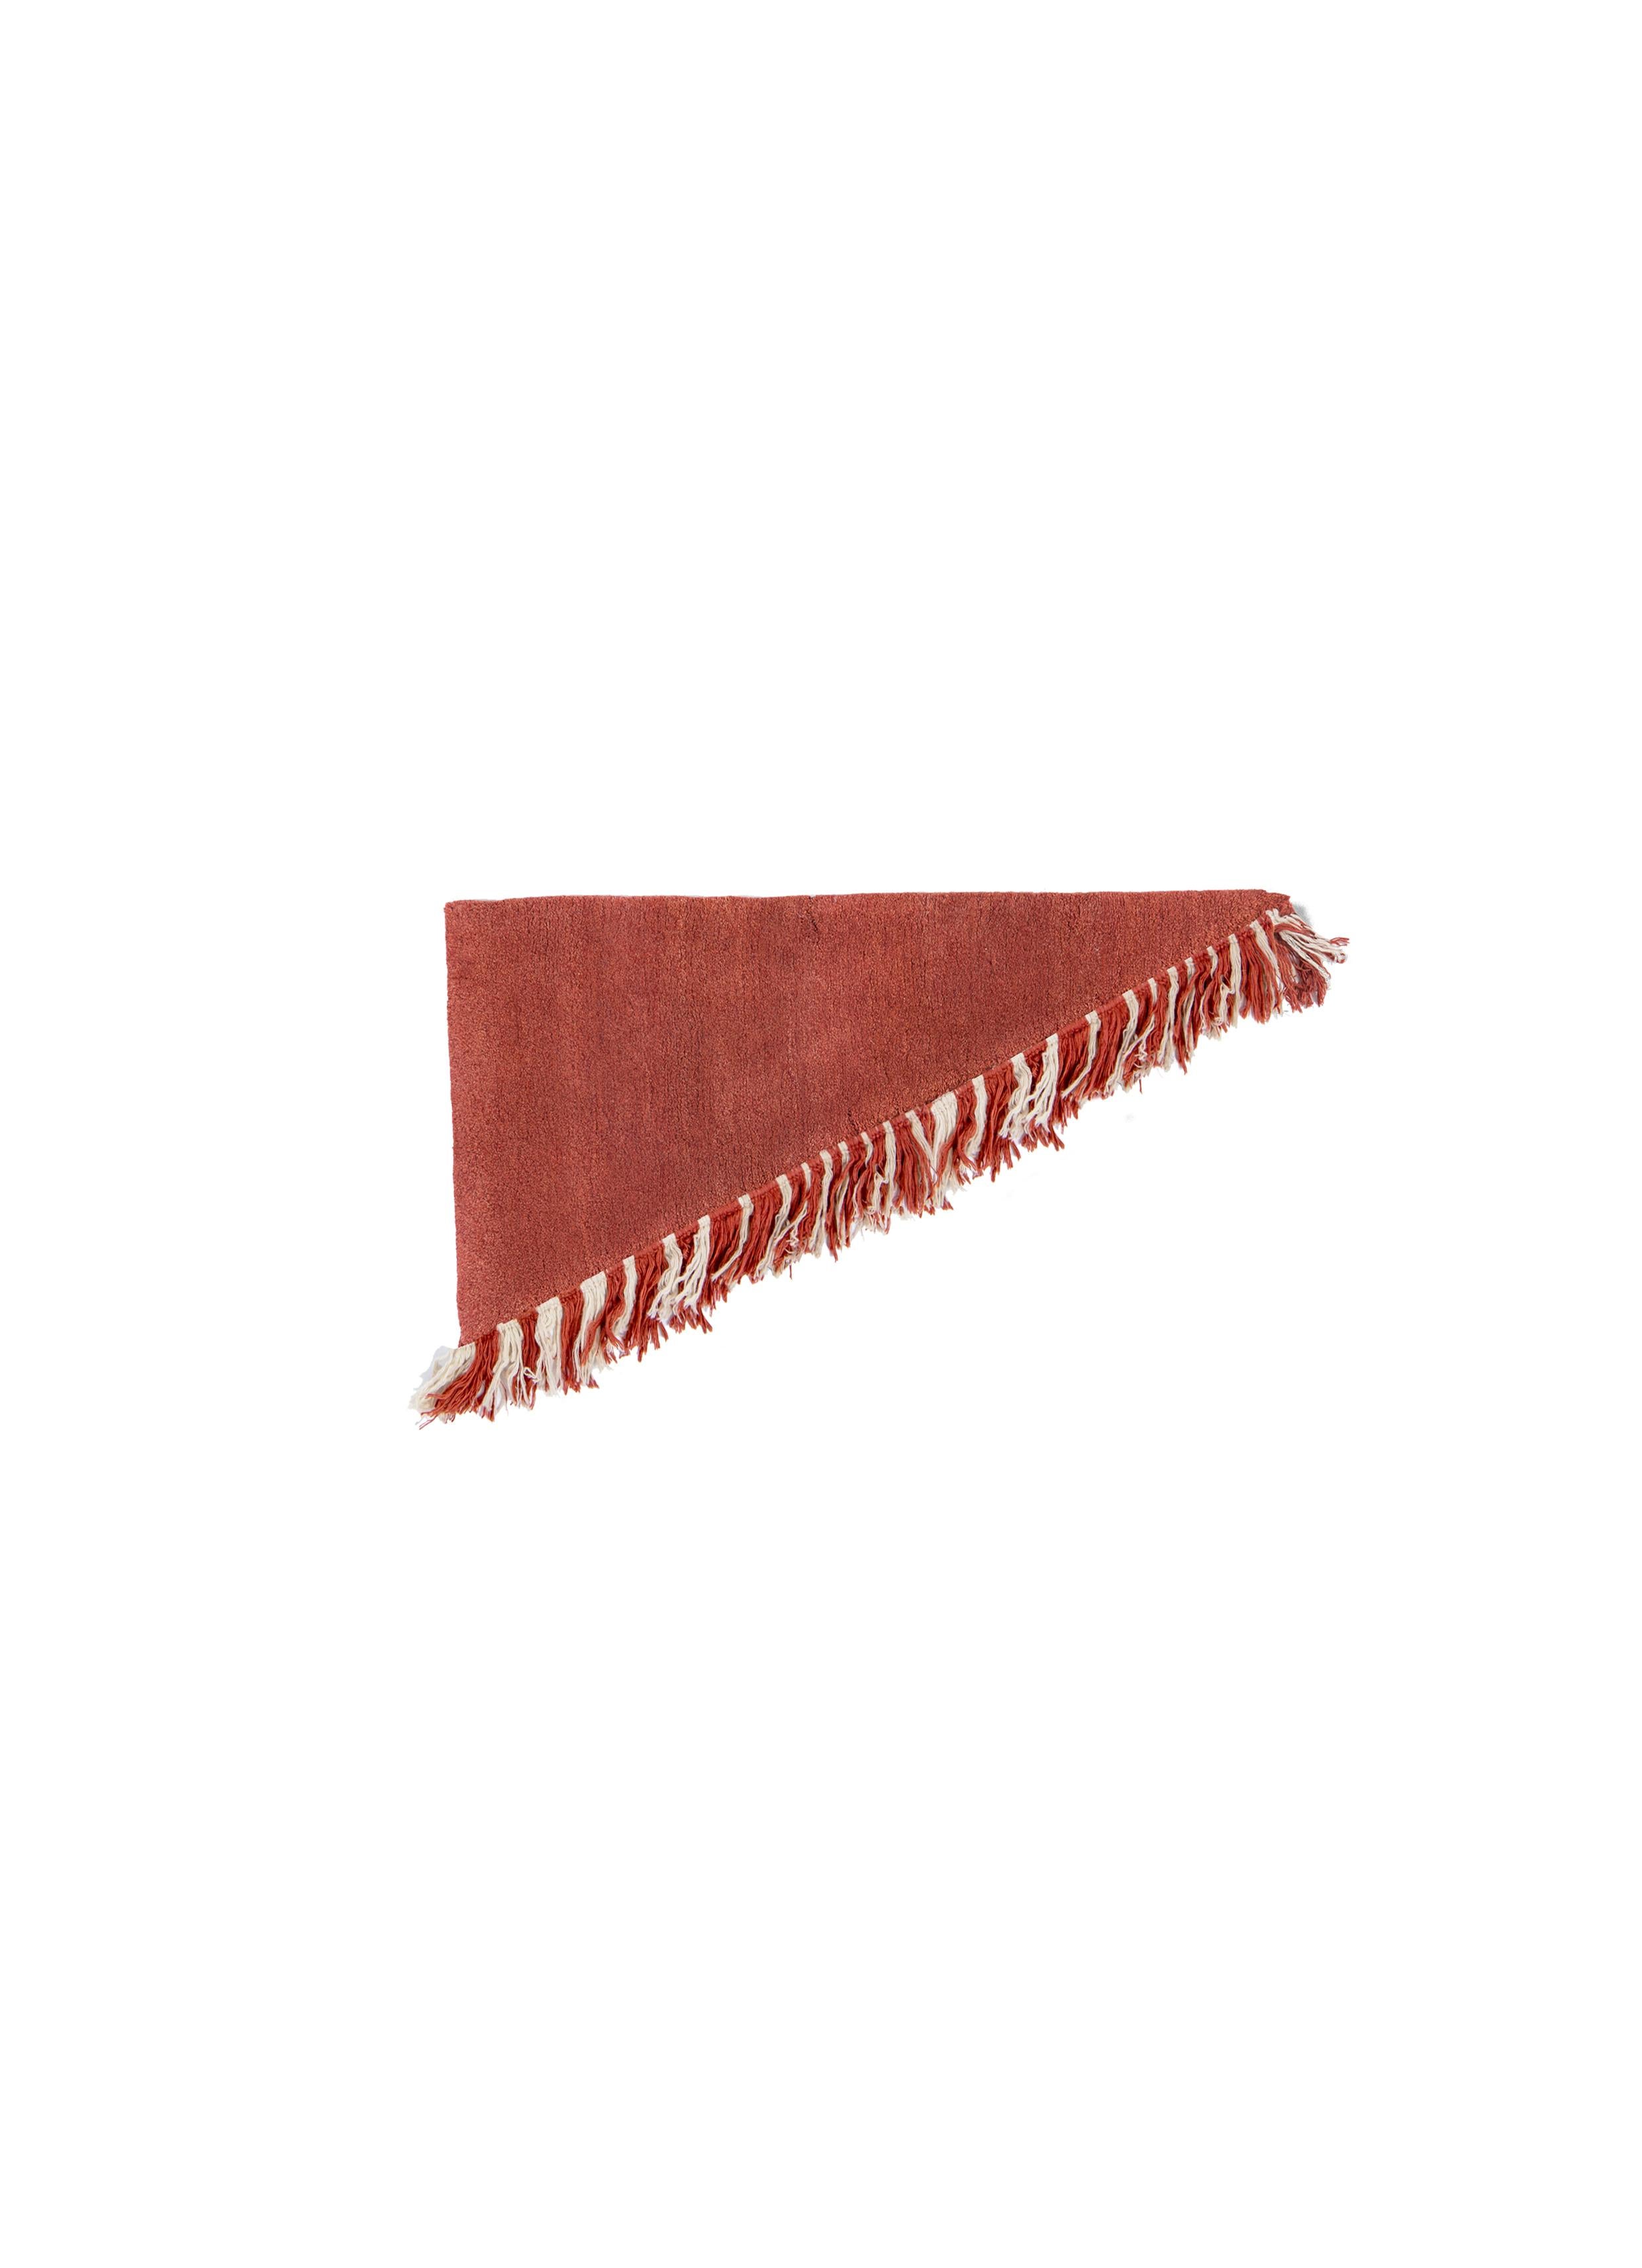 Nr. 272 freeplay handgeknüpfter Teppich von Lyk Carpet
Abmessungen: L 120 x B 60 cm.
MATERIALIEN: 100% tibetische Hochlandwolle, handgekämmte und handgesponnene Schurwolle, natürliche pflanzengefärbte Wolle, 100 Knoten pro Quadratzoll.
Handgeknüpfte